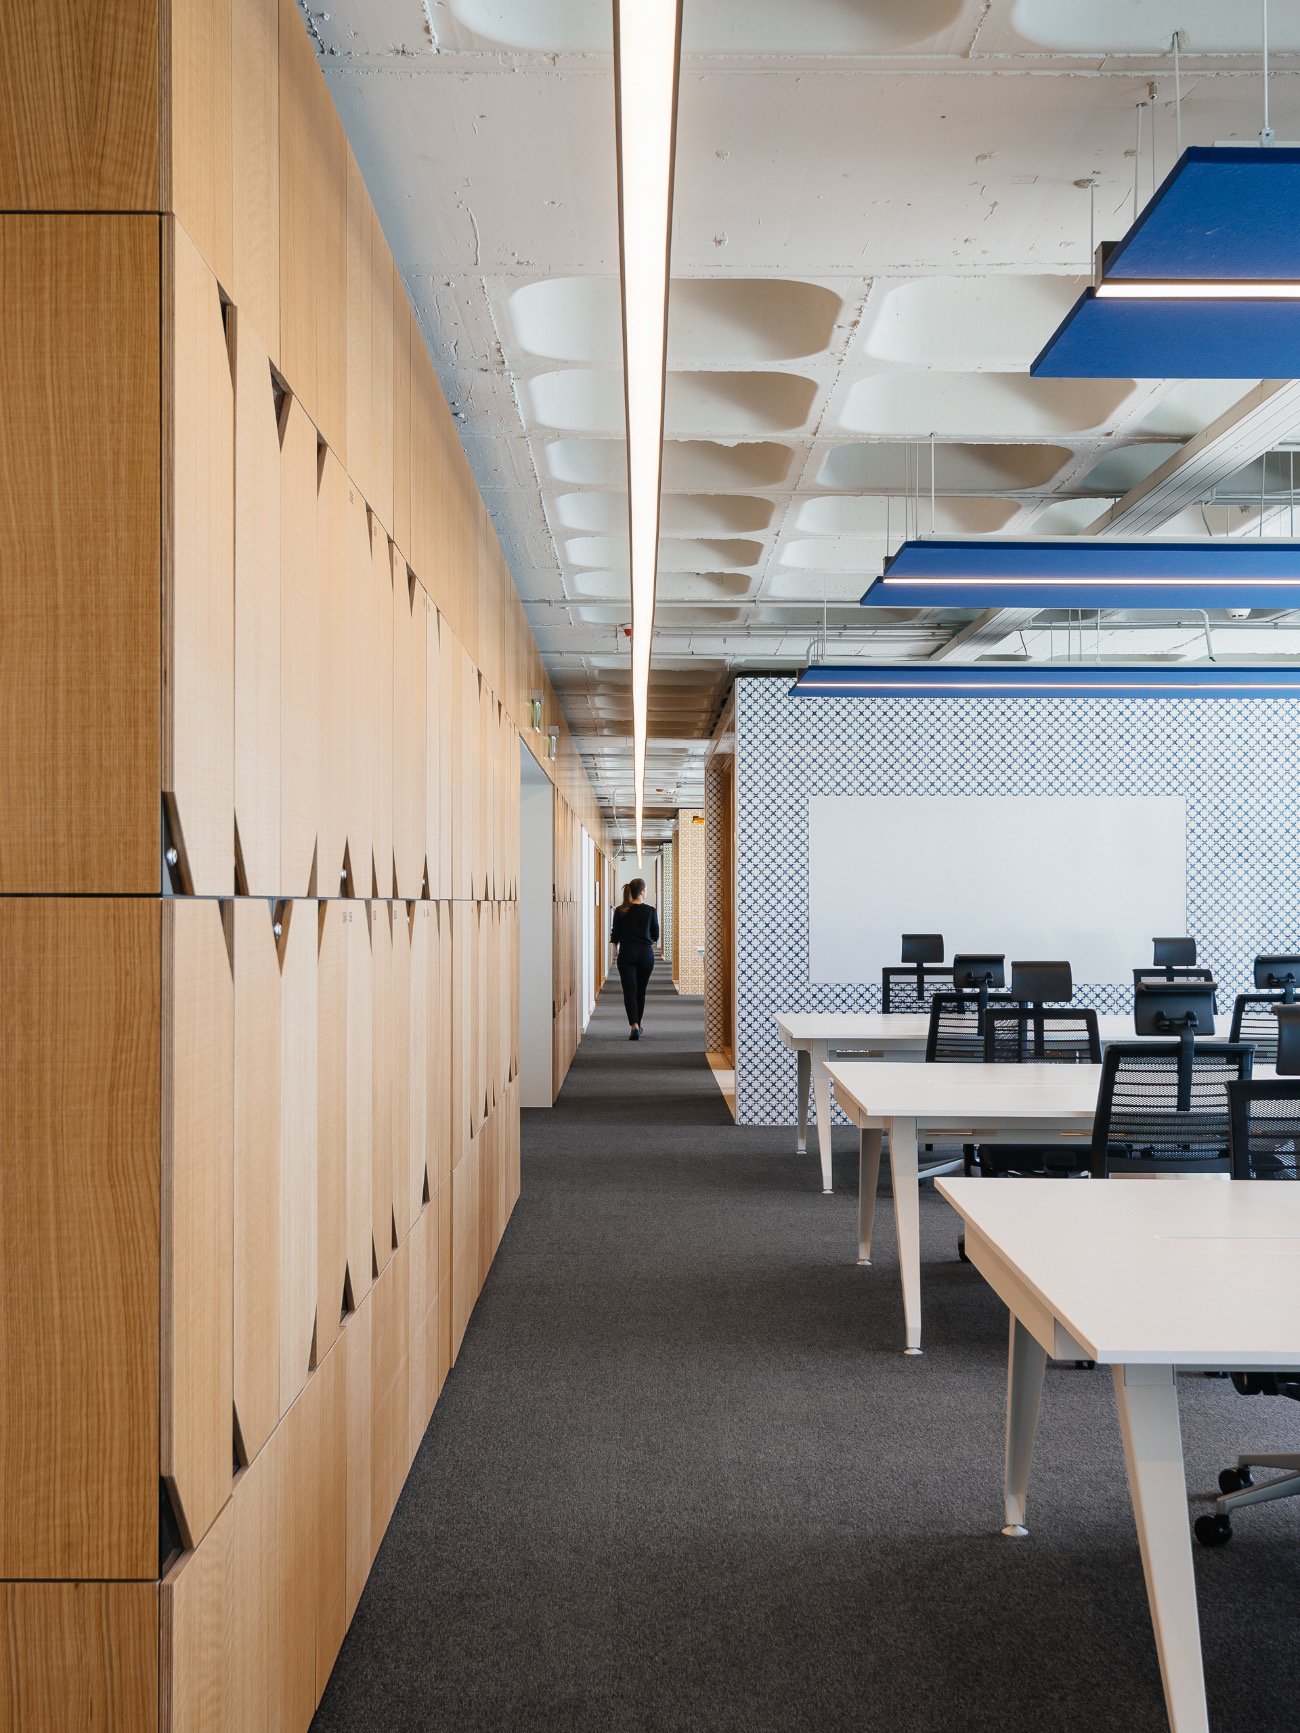 【OLXのオフィスデザイン】- ポルトガル, リスボンのワークスペース